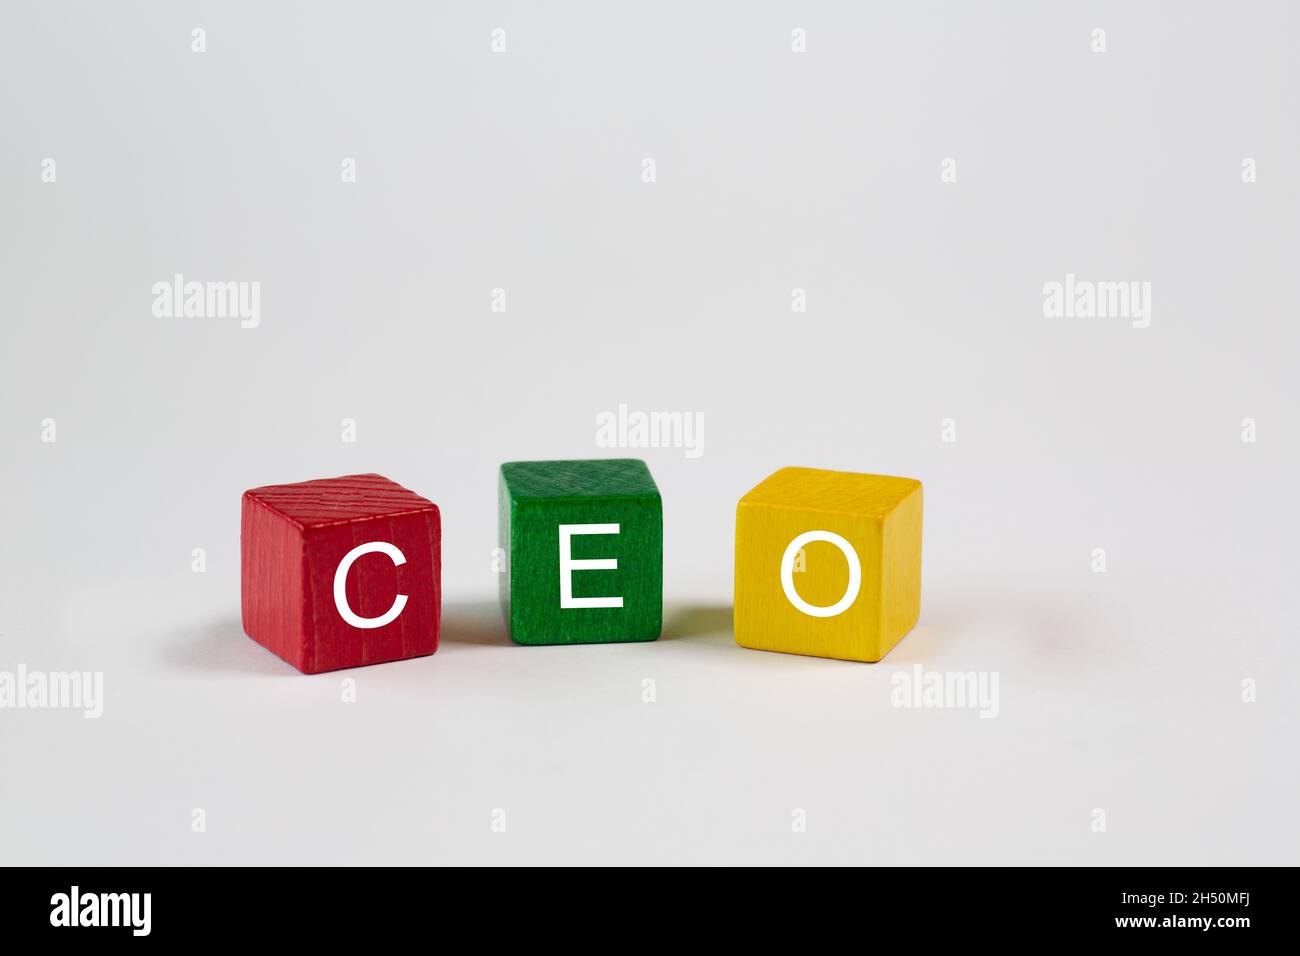 Farbige Blöcke auf einem isolierten weißen Hintergrund enthalten die Buchstaben CEO, die für Chief Executive Officer stehen. Hier steht freier Speicherplatz zur Verfügung Stockfoto